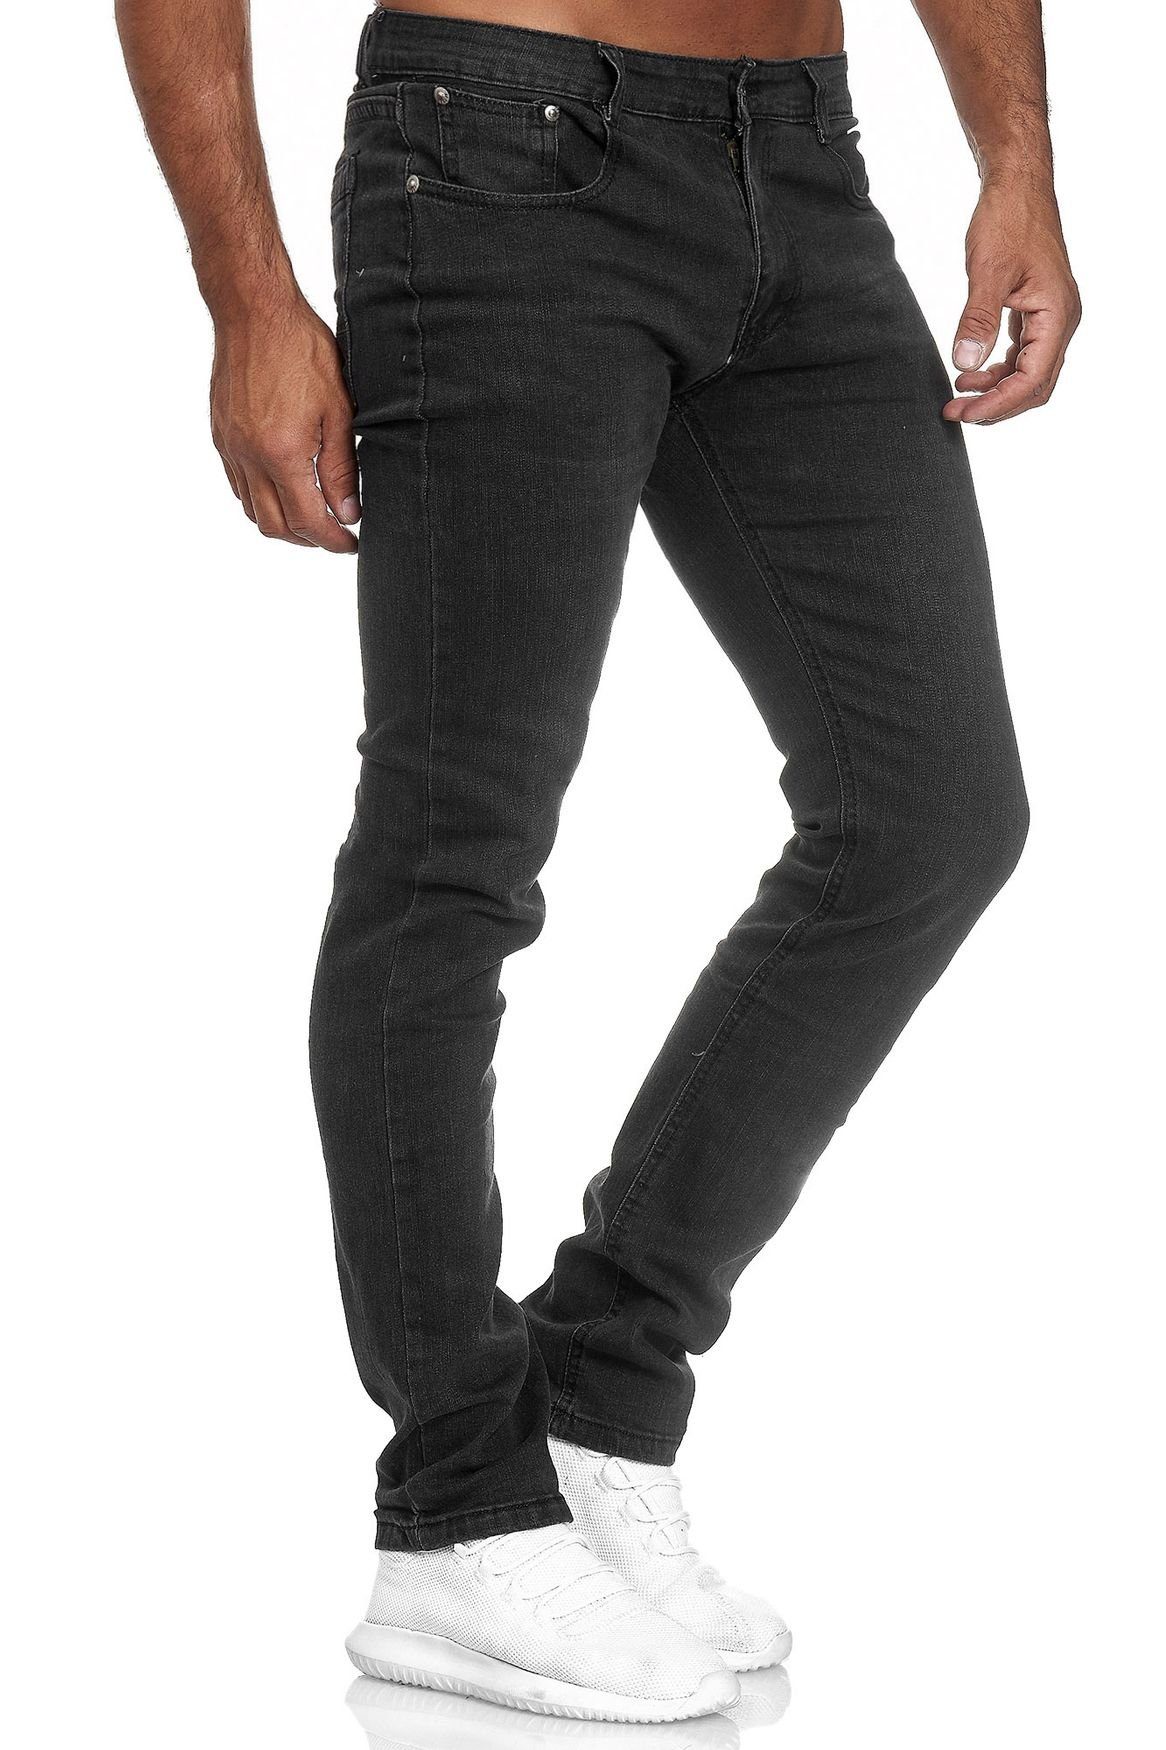 Giani 5 Slim-fit-Jeans »Herren Jeans Hose Klassisch Denim Slim Fit« (1-tlg)  2847 in Schwarz online kaufen | OTTO